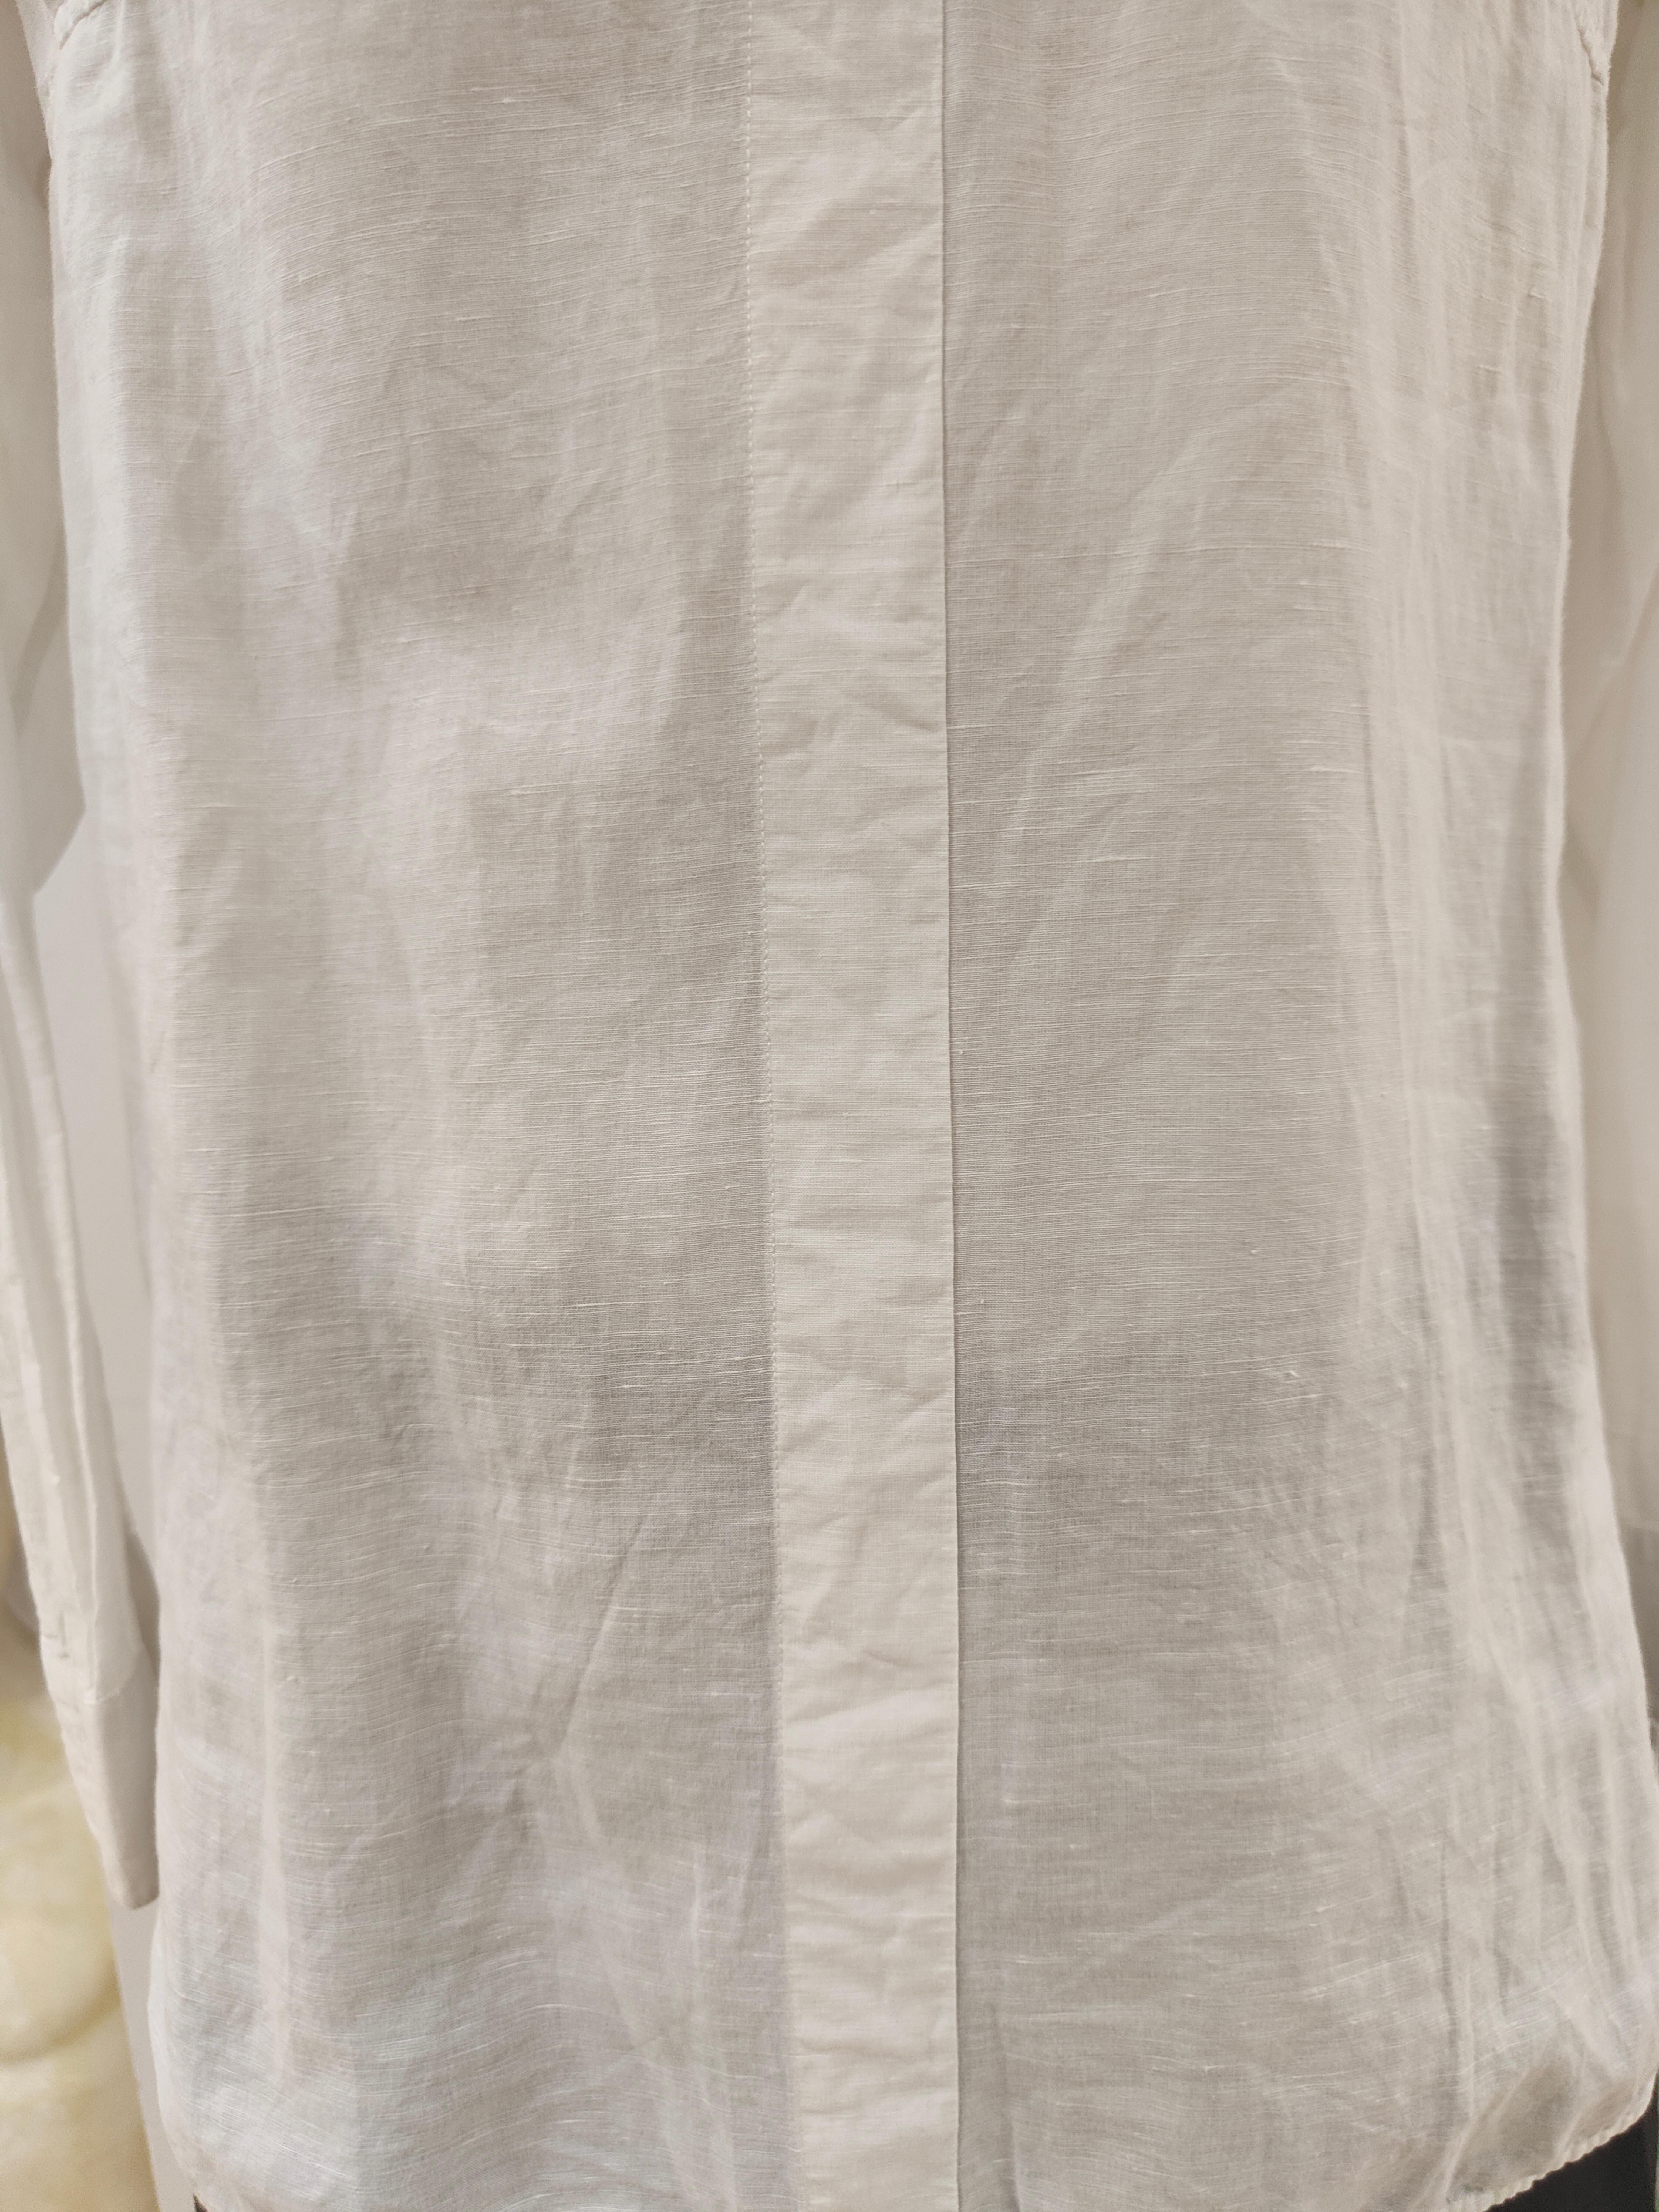 Balenciaga white linen shirt For Sale 1